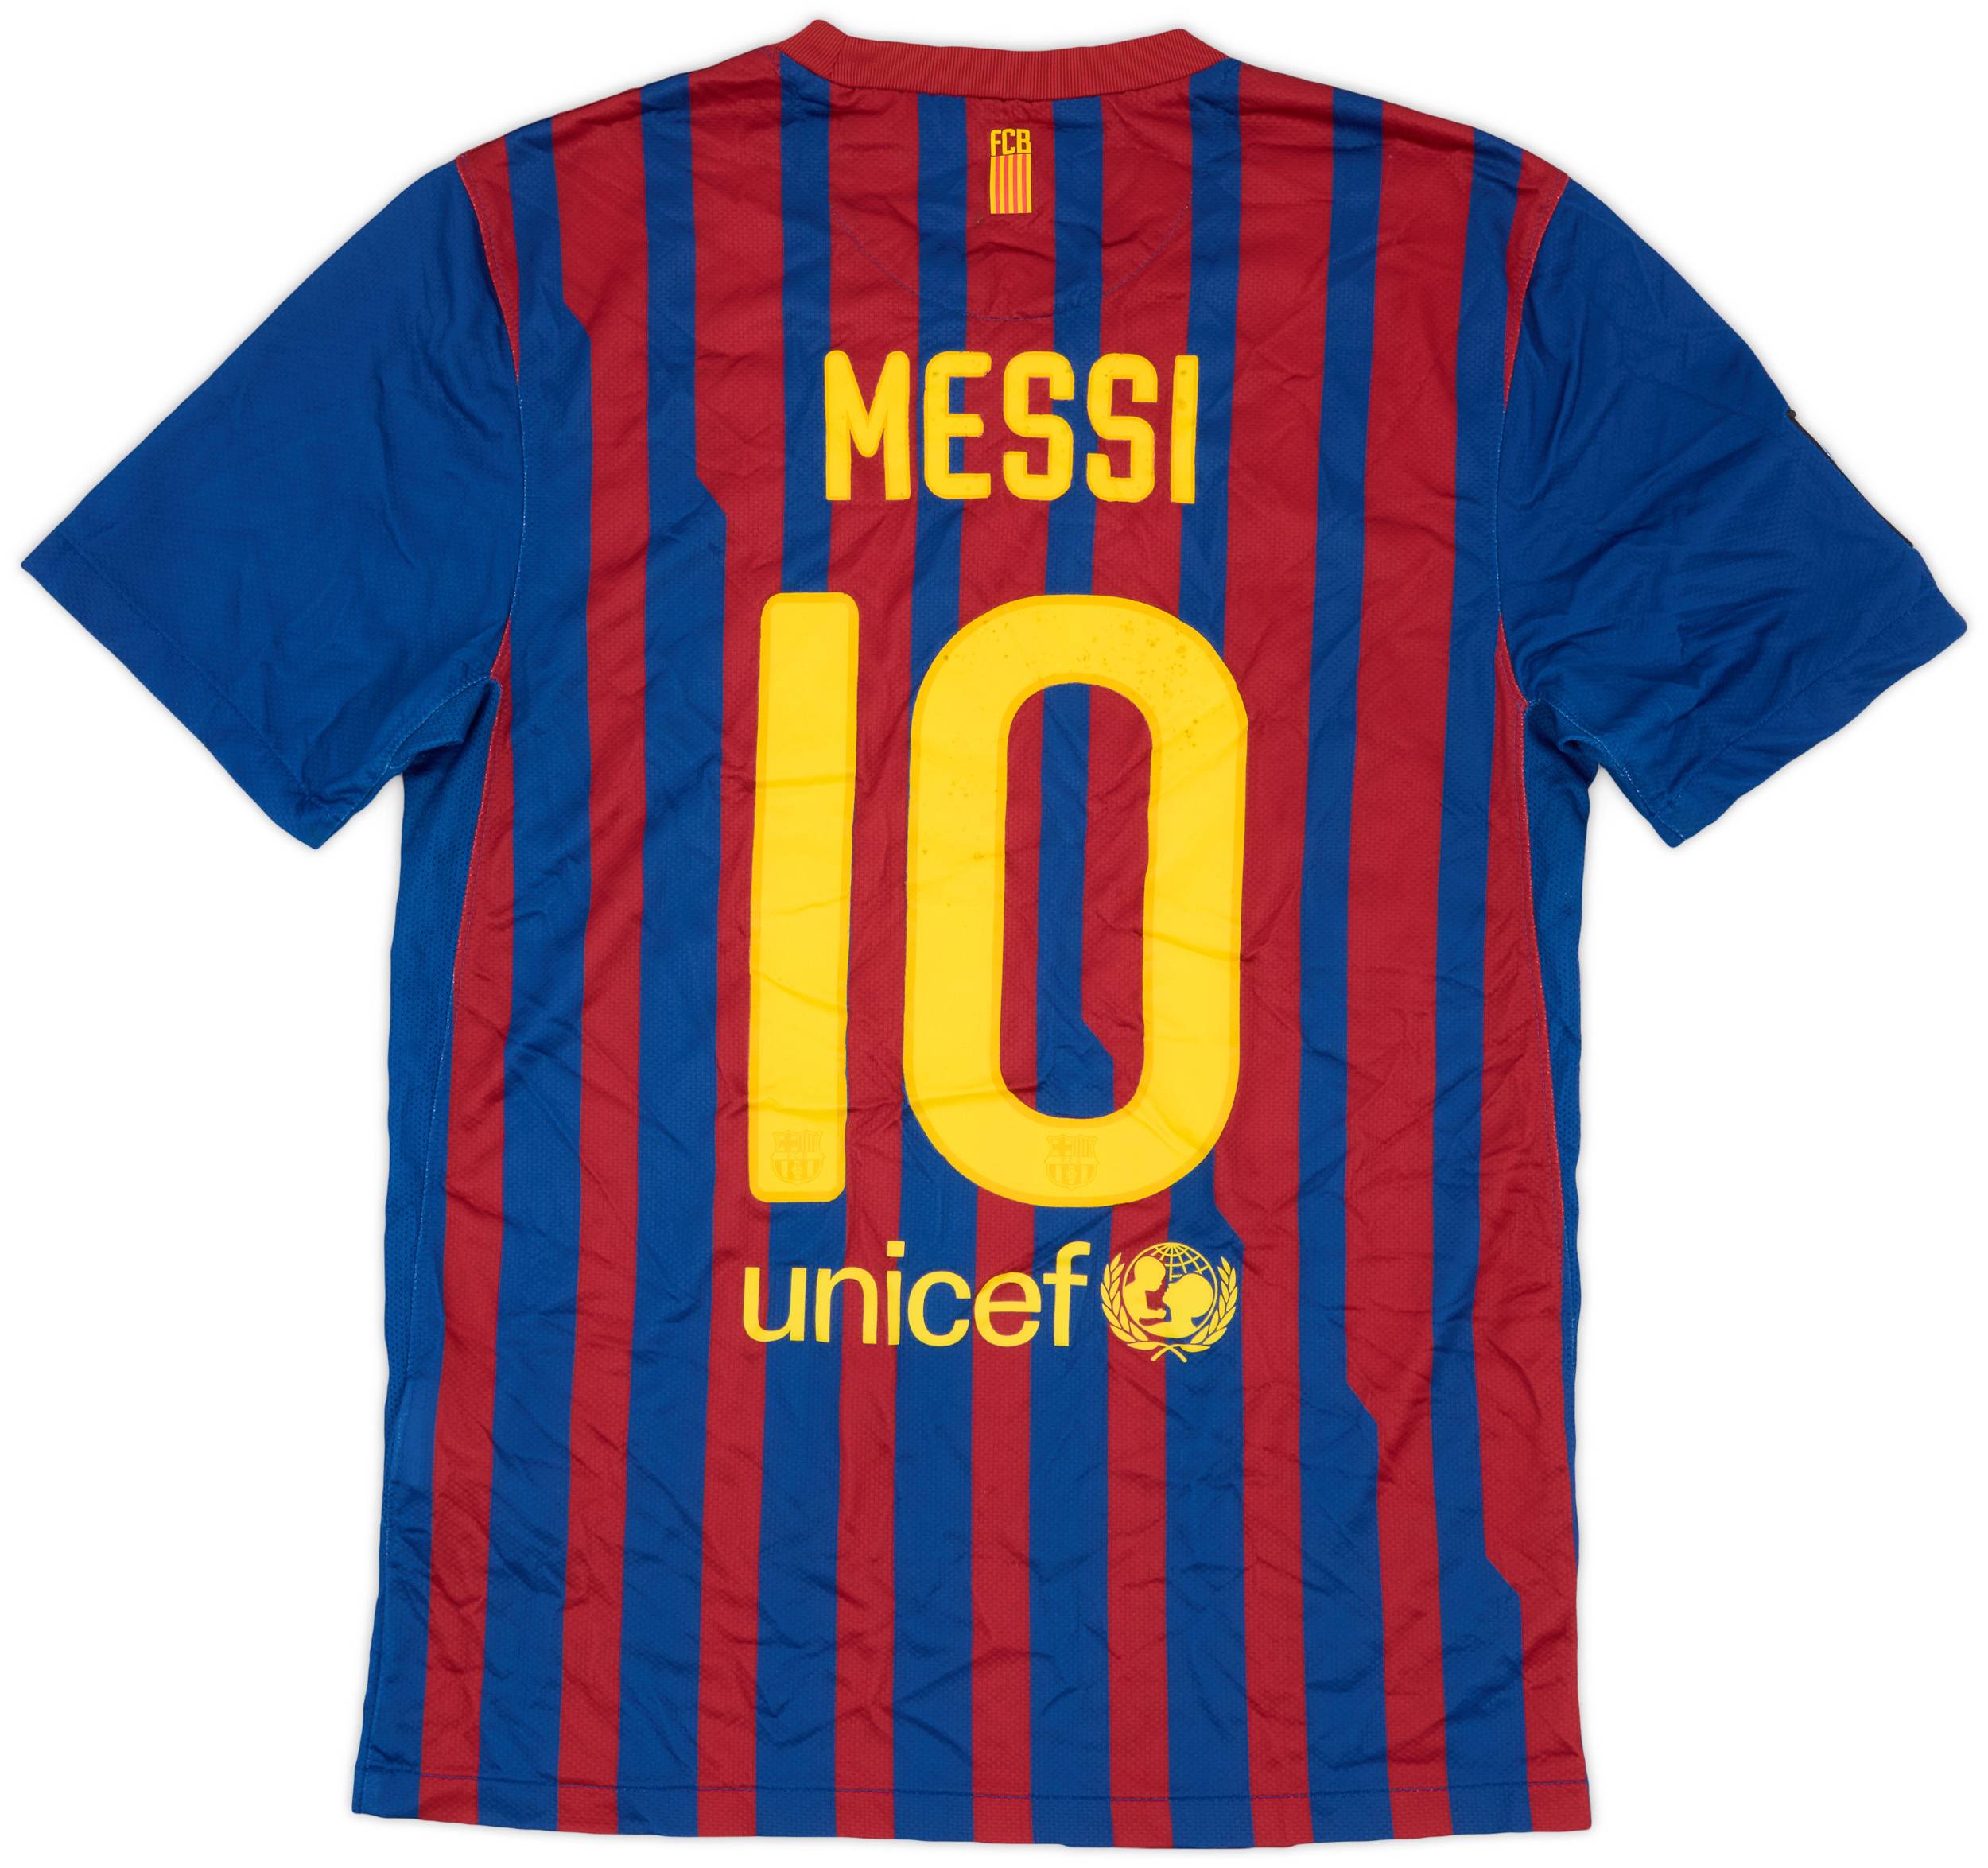 2011-12 Barcelona Home Shirt Messi #10 - 6/10 - (S)